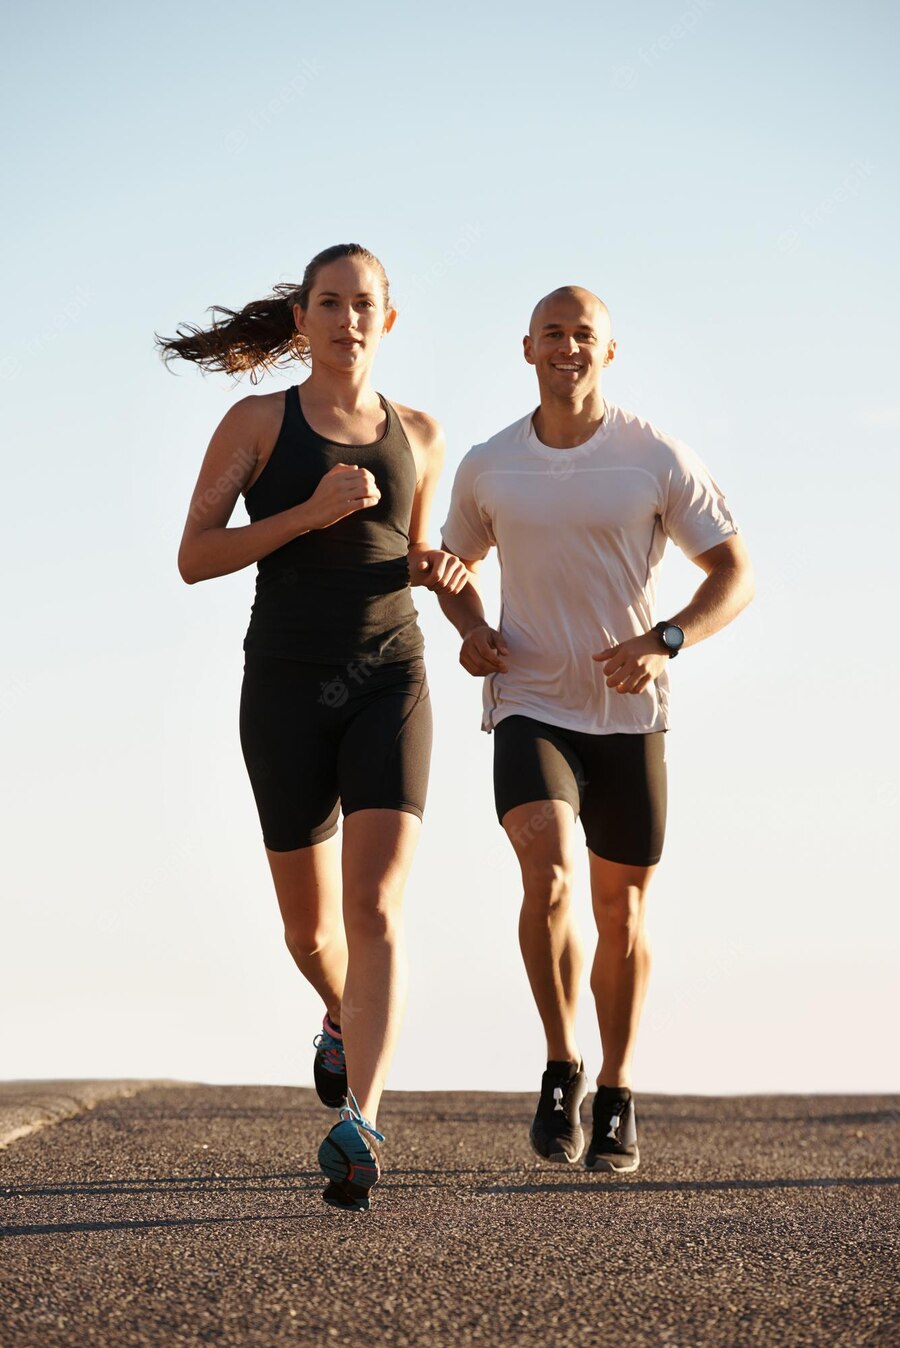 muž a žena běhají a běh mají jako podpůrný sport pro spalovač tuků 